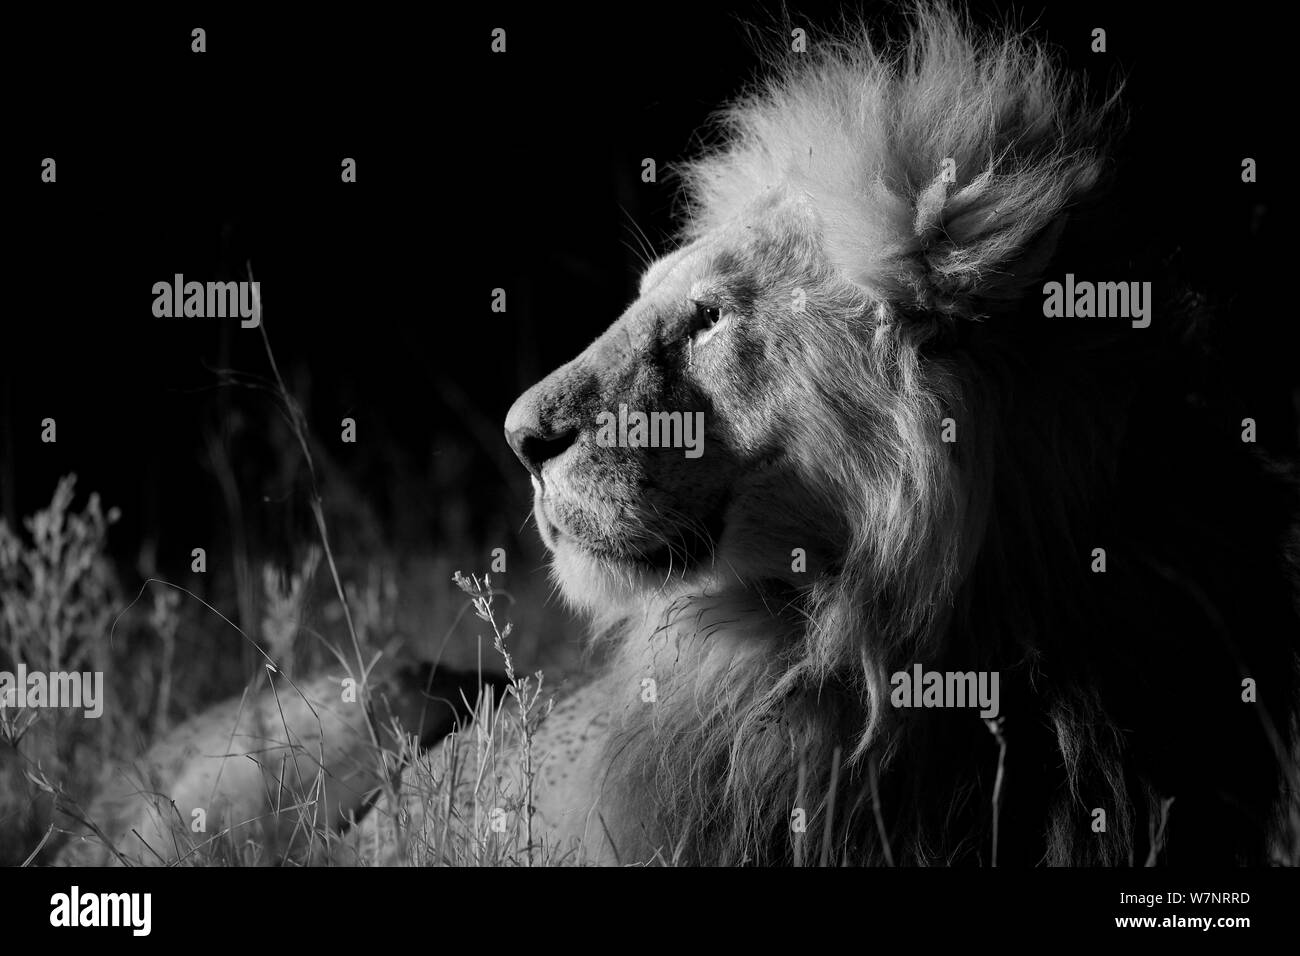 Marais mâle fierté lion (Panthera leo) sur une nuit sans lune, Masai Mara, Kenya. Prises avec caméra infra rouge, Septembre Banque D'Images